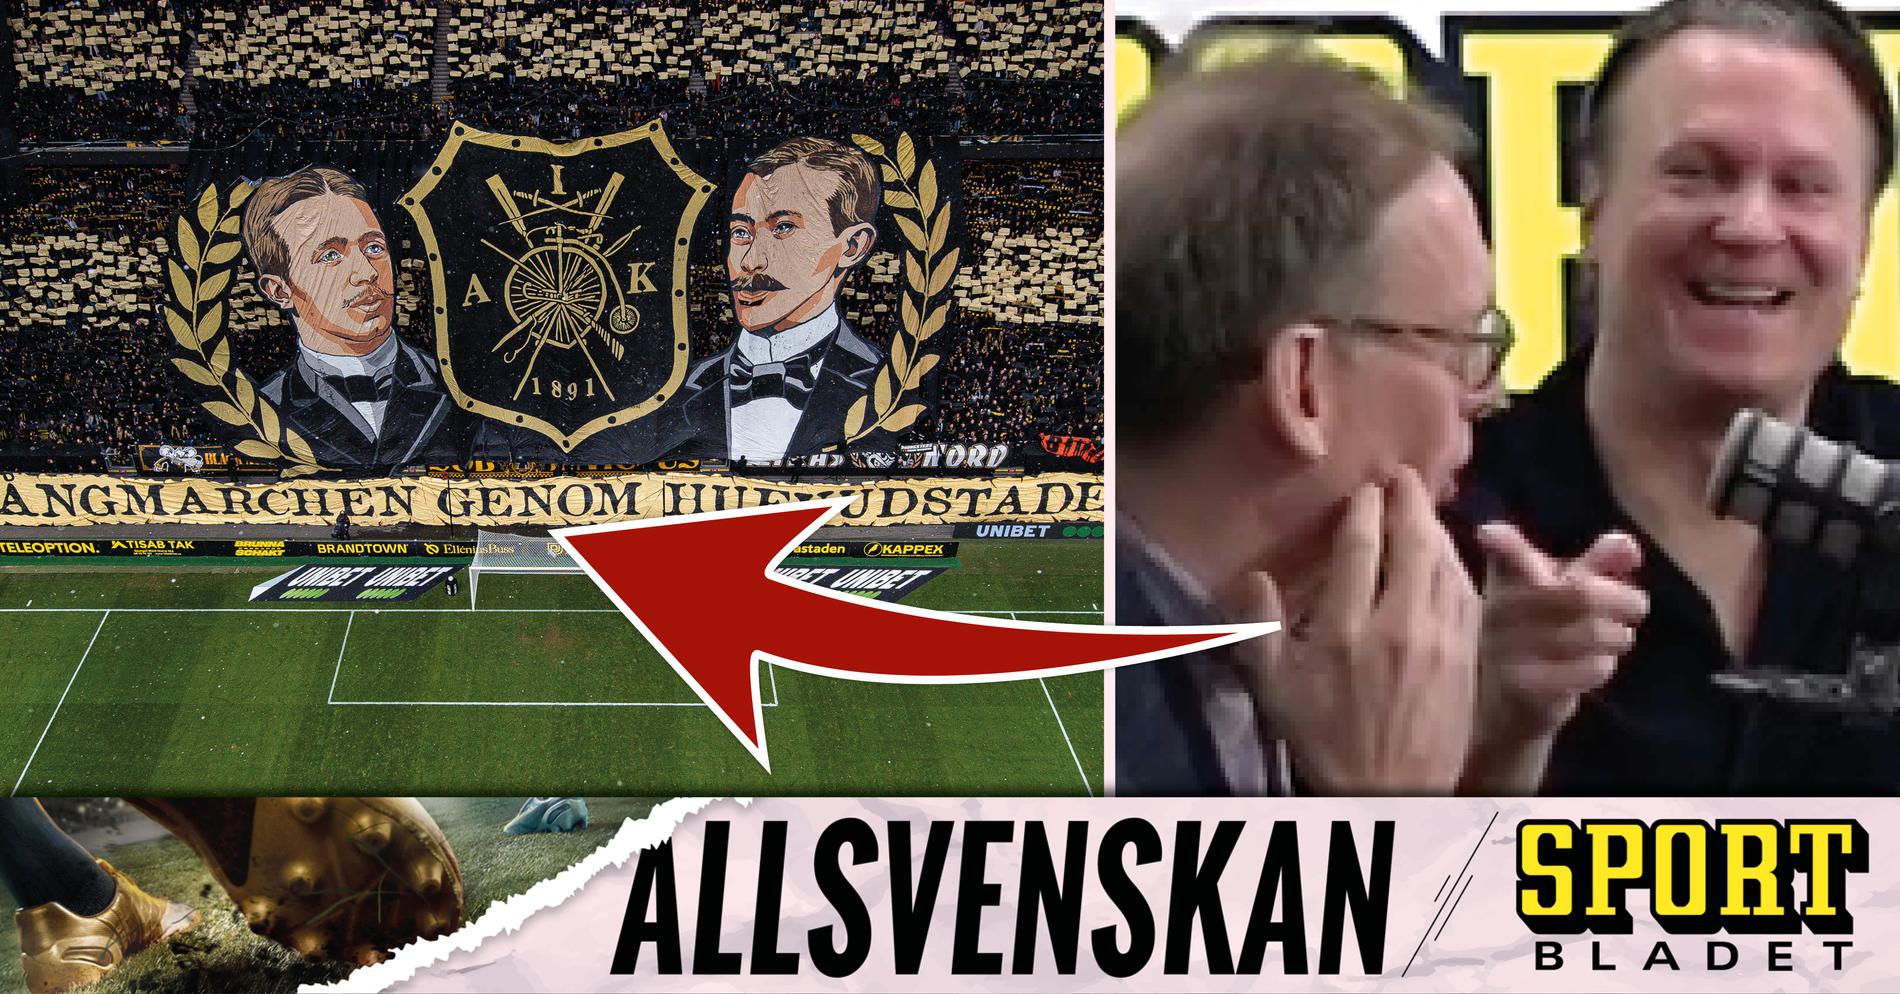 AIK Fotboll: Pinsamma tabben (?) i AIK:s tifo mot Djurgården • Podden Sportbladet Allsvenskan med nytt avsnitt